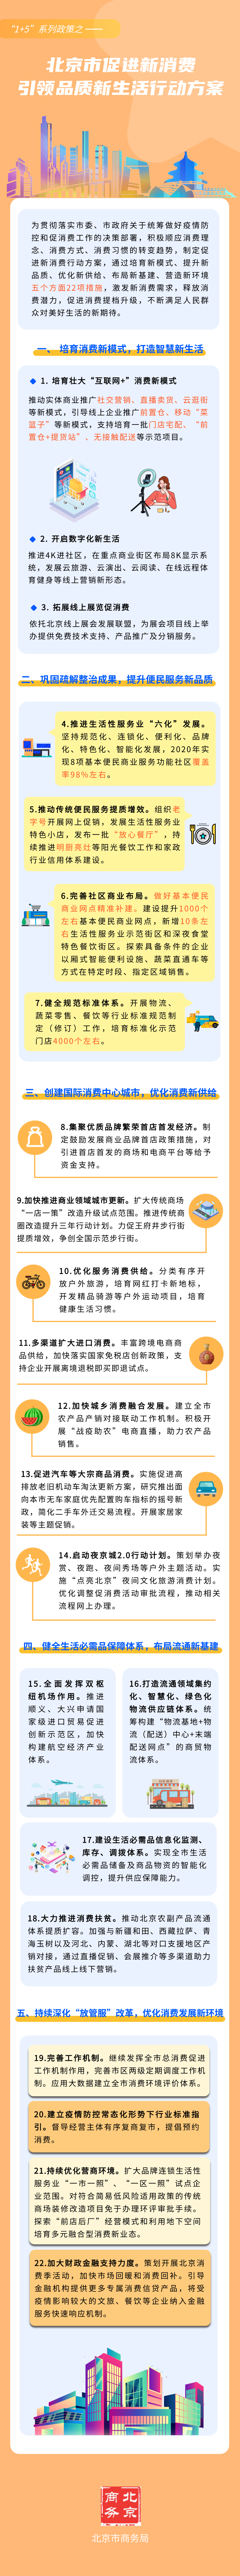 北京市促进新消费引领品质新生活行动方案.png